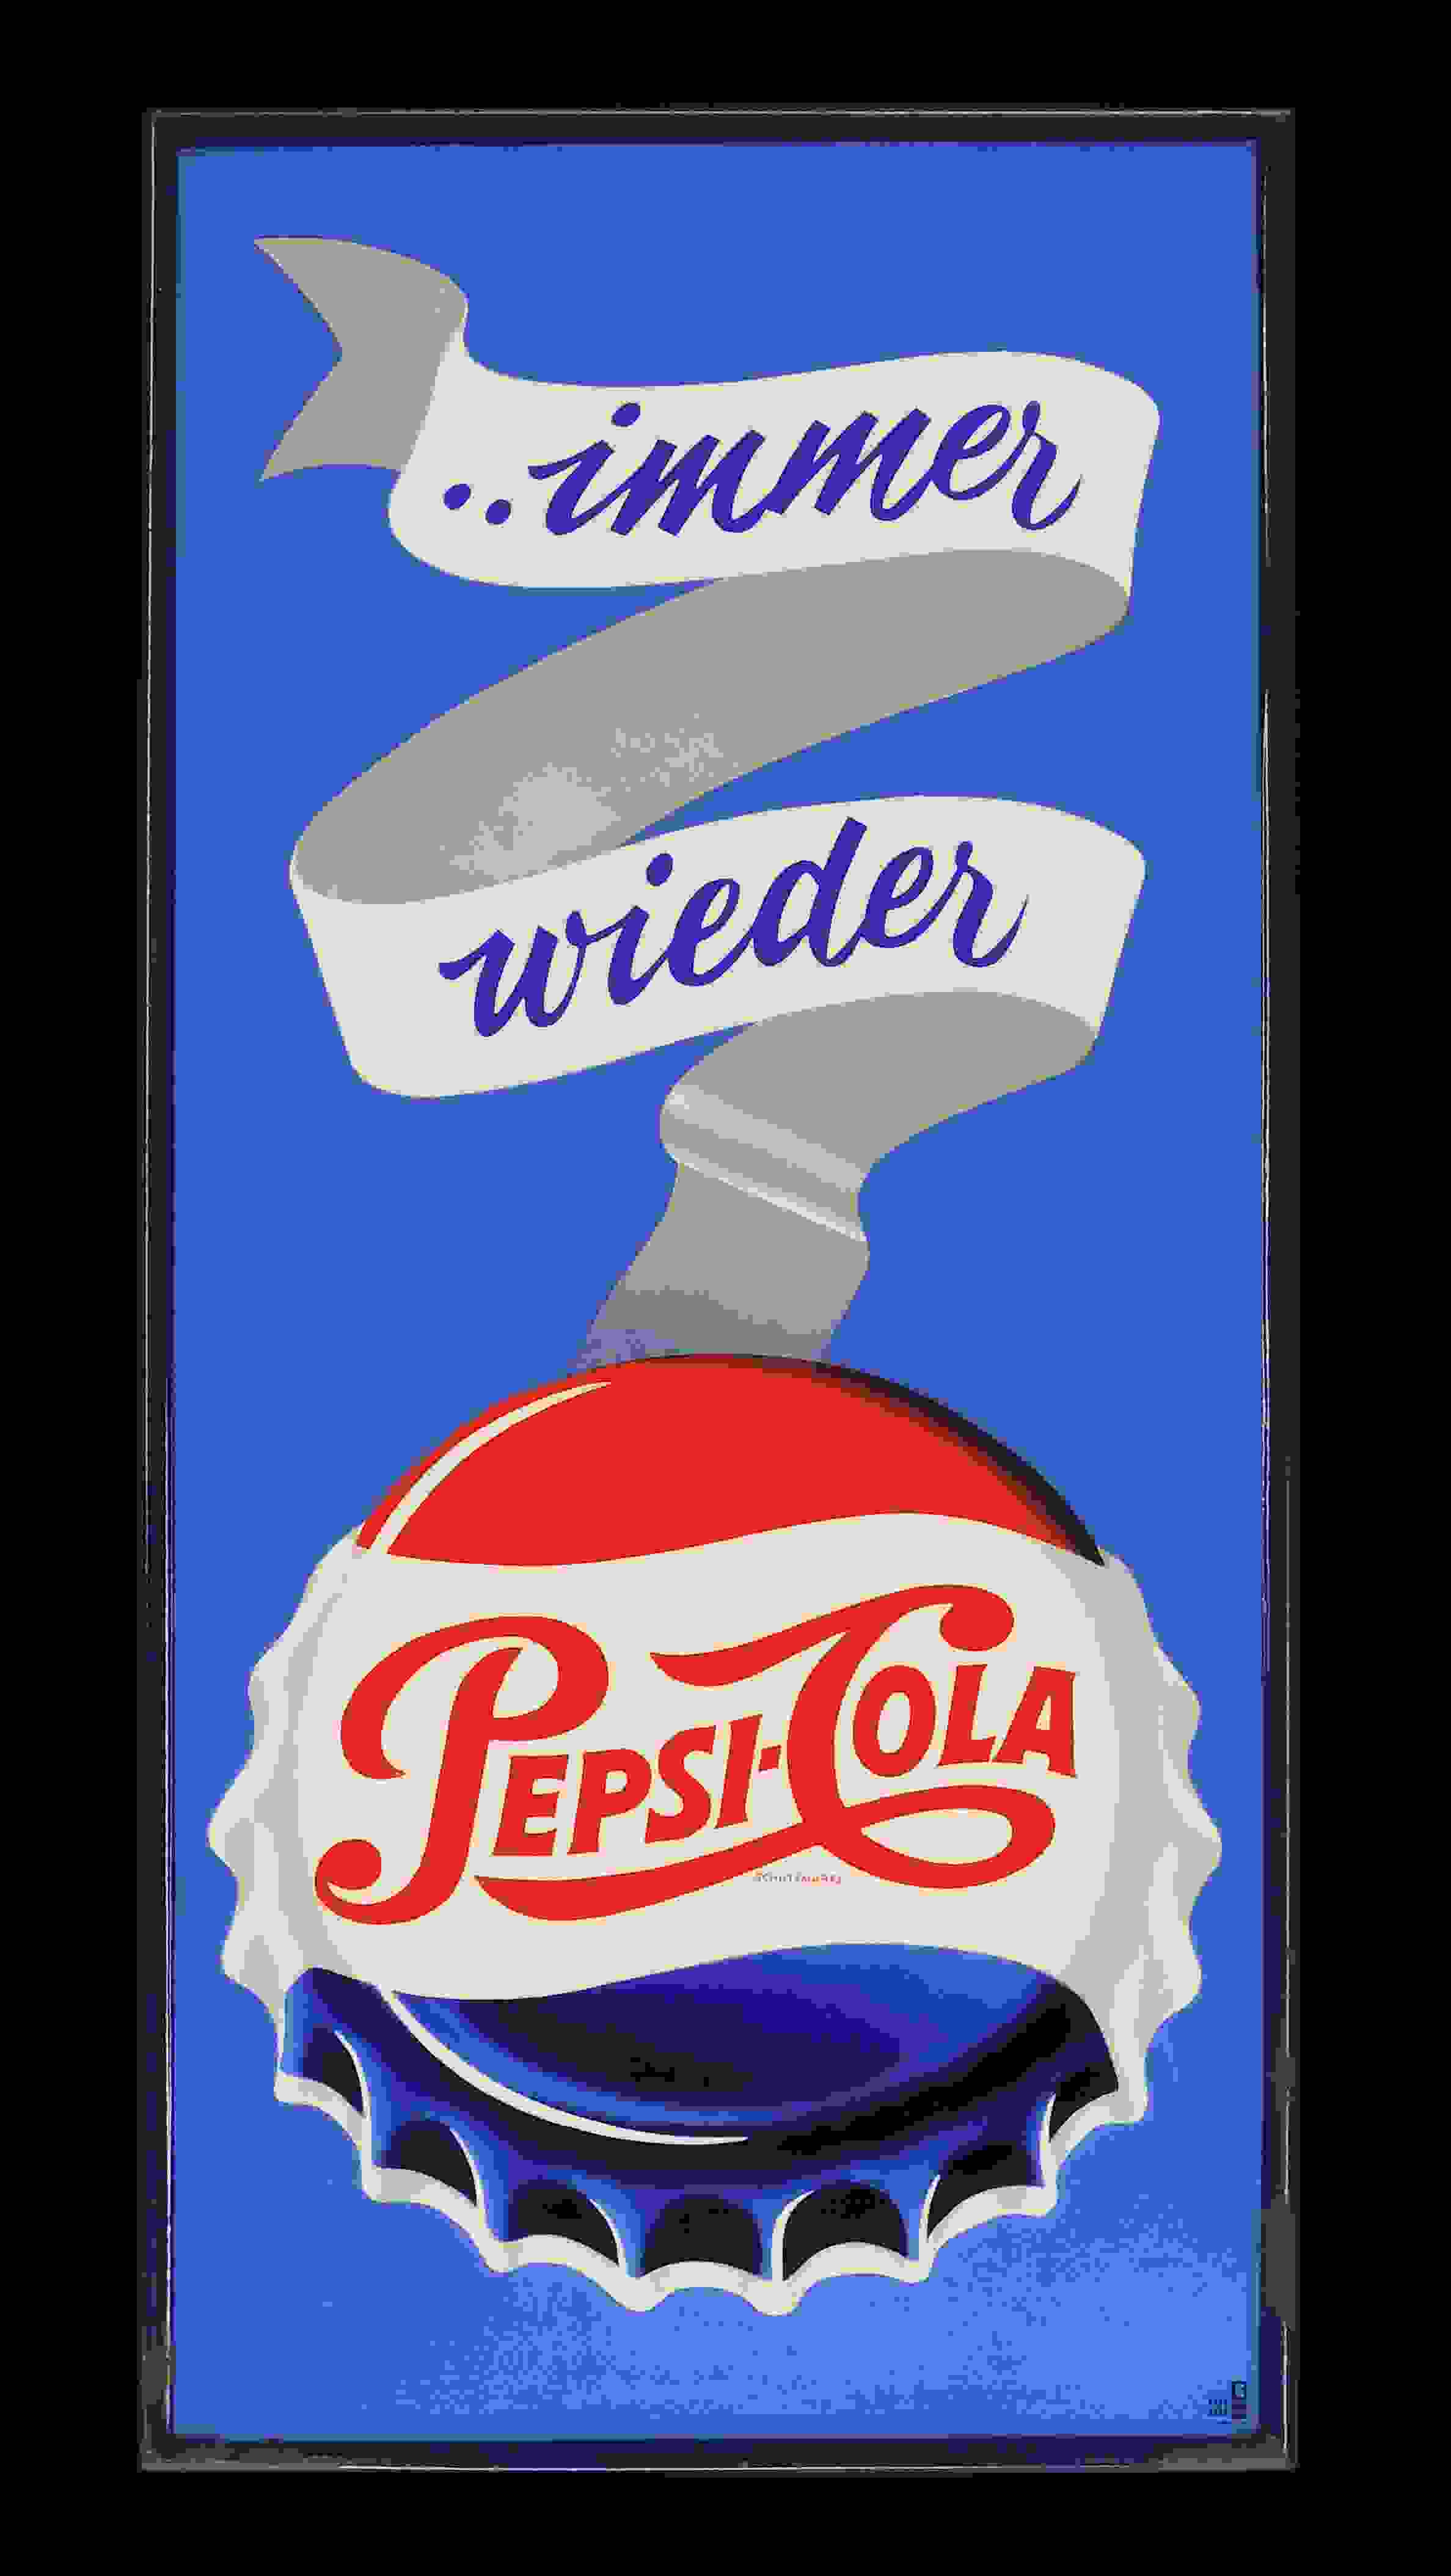 Pepsi-Cola ..immer wieder 